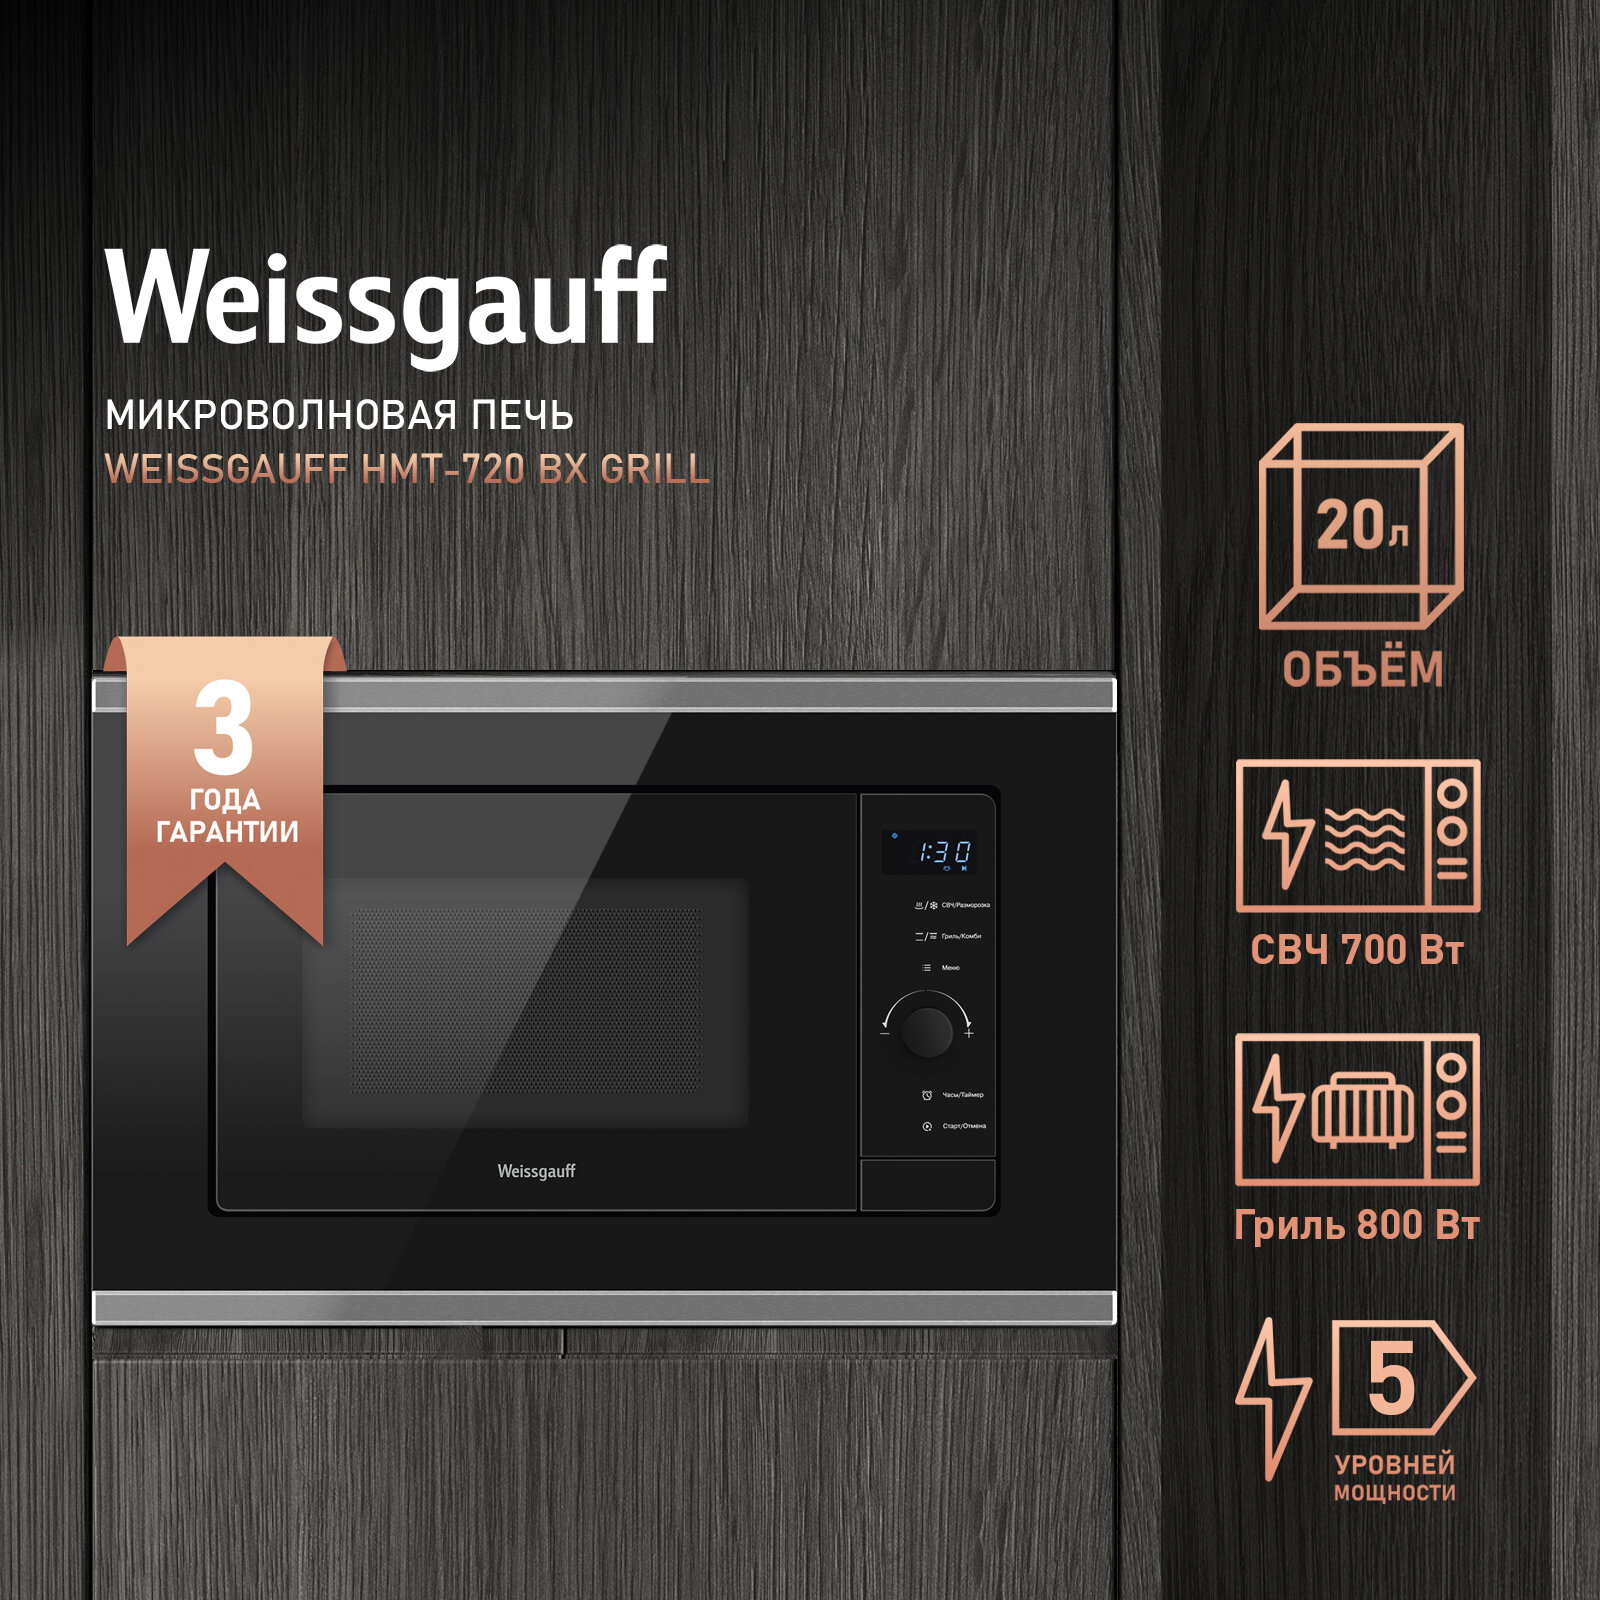 Встраиваемая микроволновая печь Weissgauff HMT-720 BX Grill 3 года гарантии, объем 20 литров, гриль, разморозка по весу, Блокировка от детей